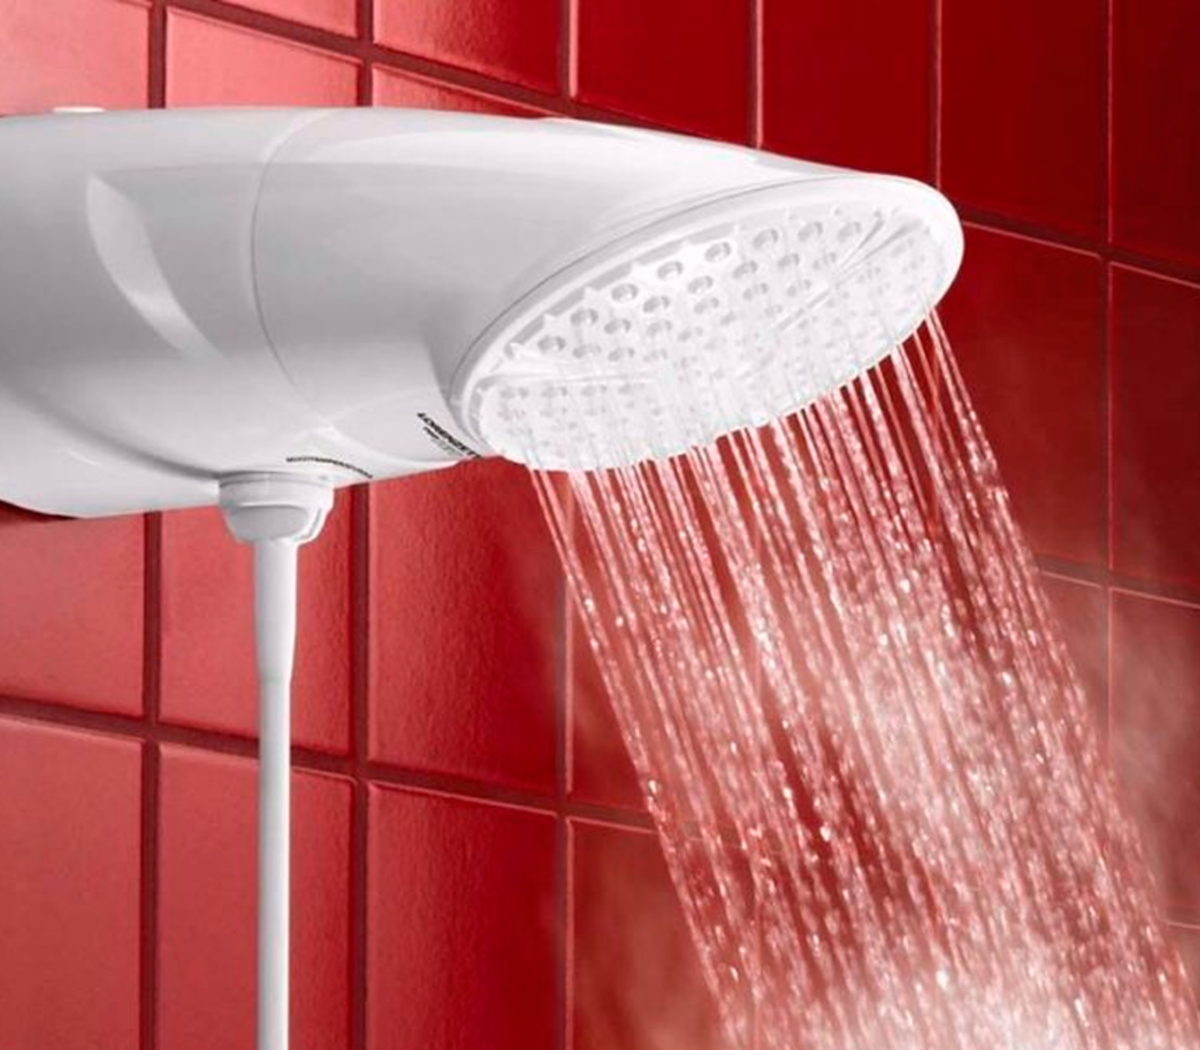 Una mujer murió por la descarga de una ducha eléctrica: qué cuidados se  deben tener | En Berisso | Página12